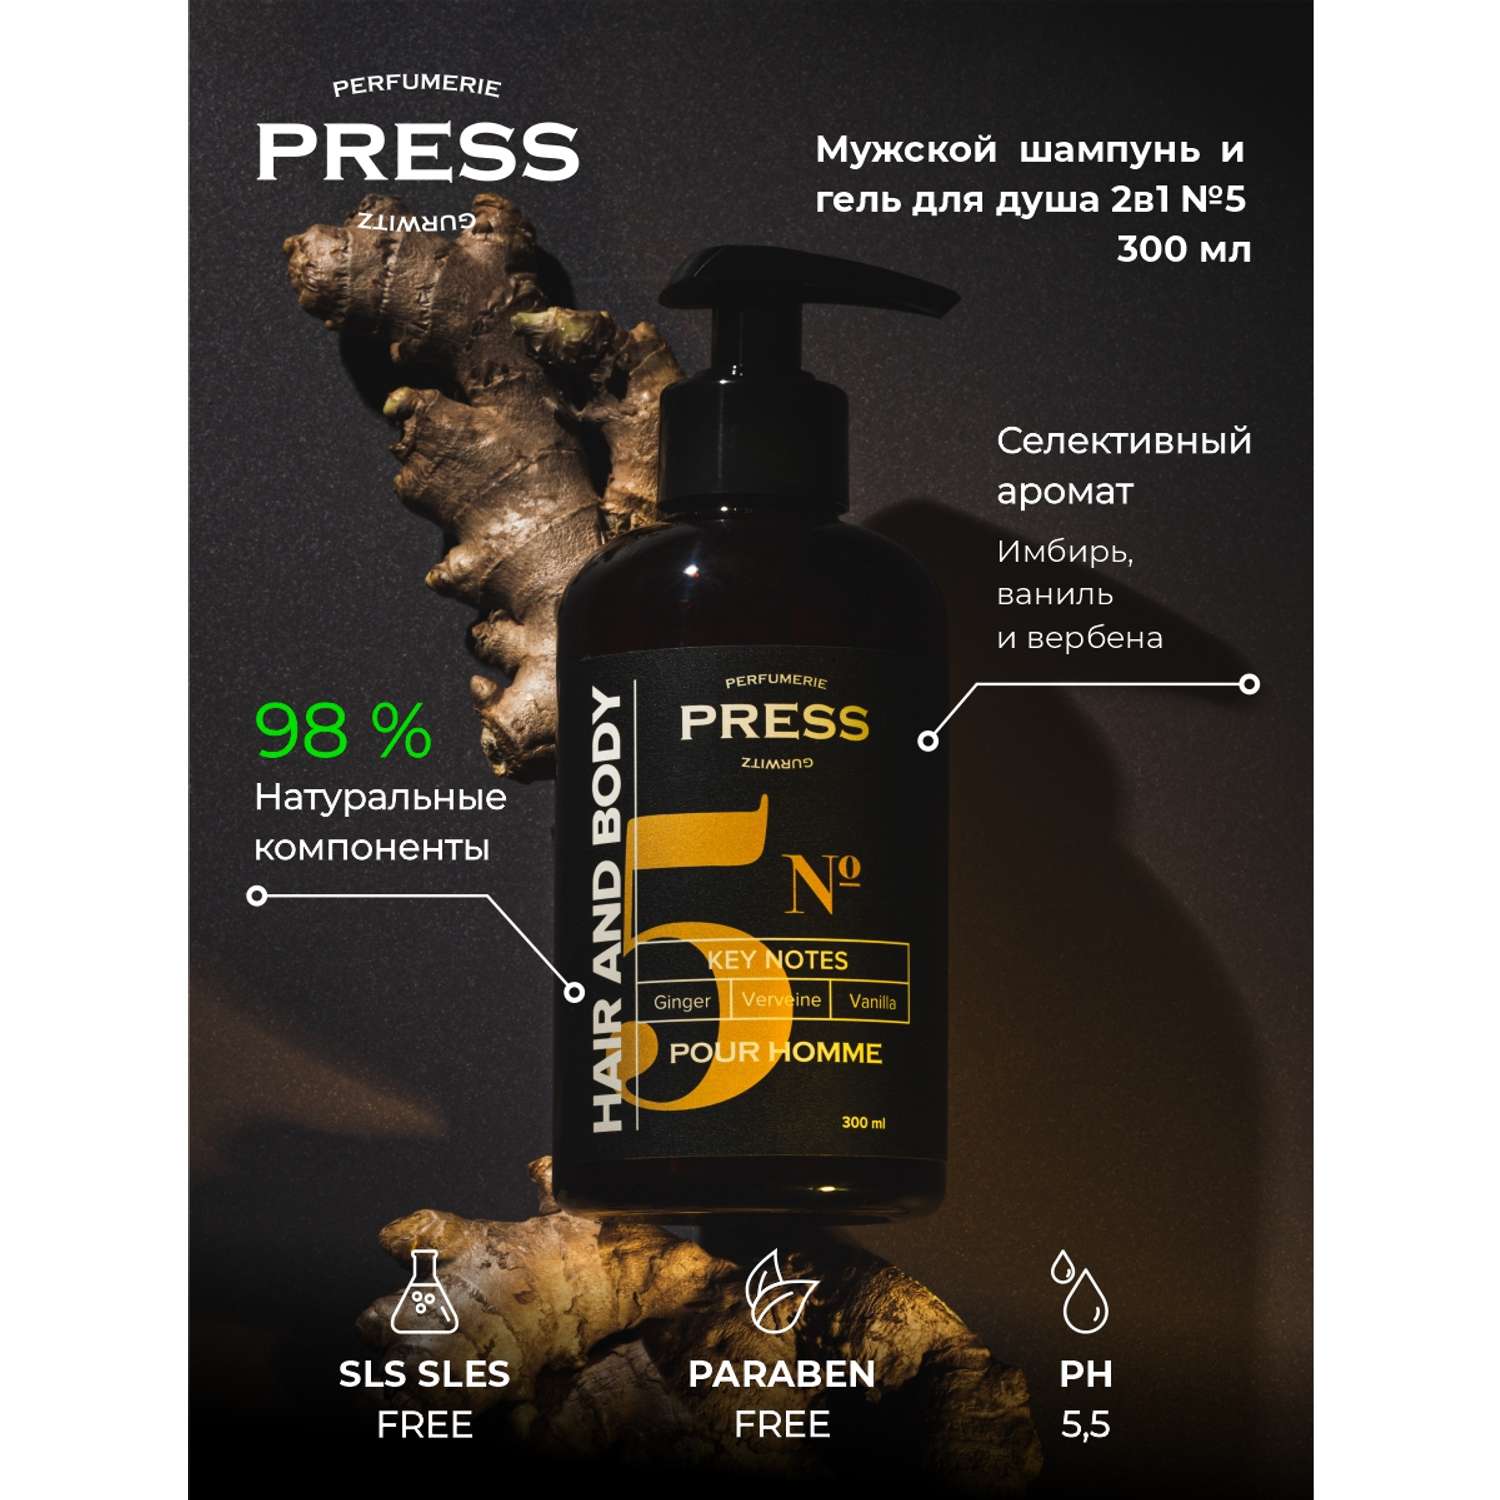 Шампунь-гель 2 в1 №5 Press Gurwitz Perfumerie мужской парфюмированный с Имбирь Ваниль Вербена натуральный для сухих и ломких волос - фото 2